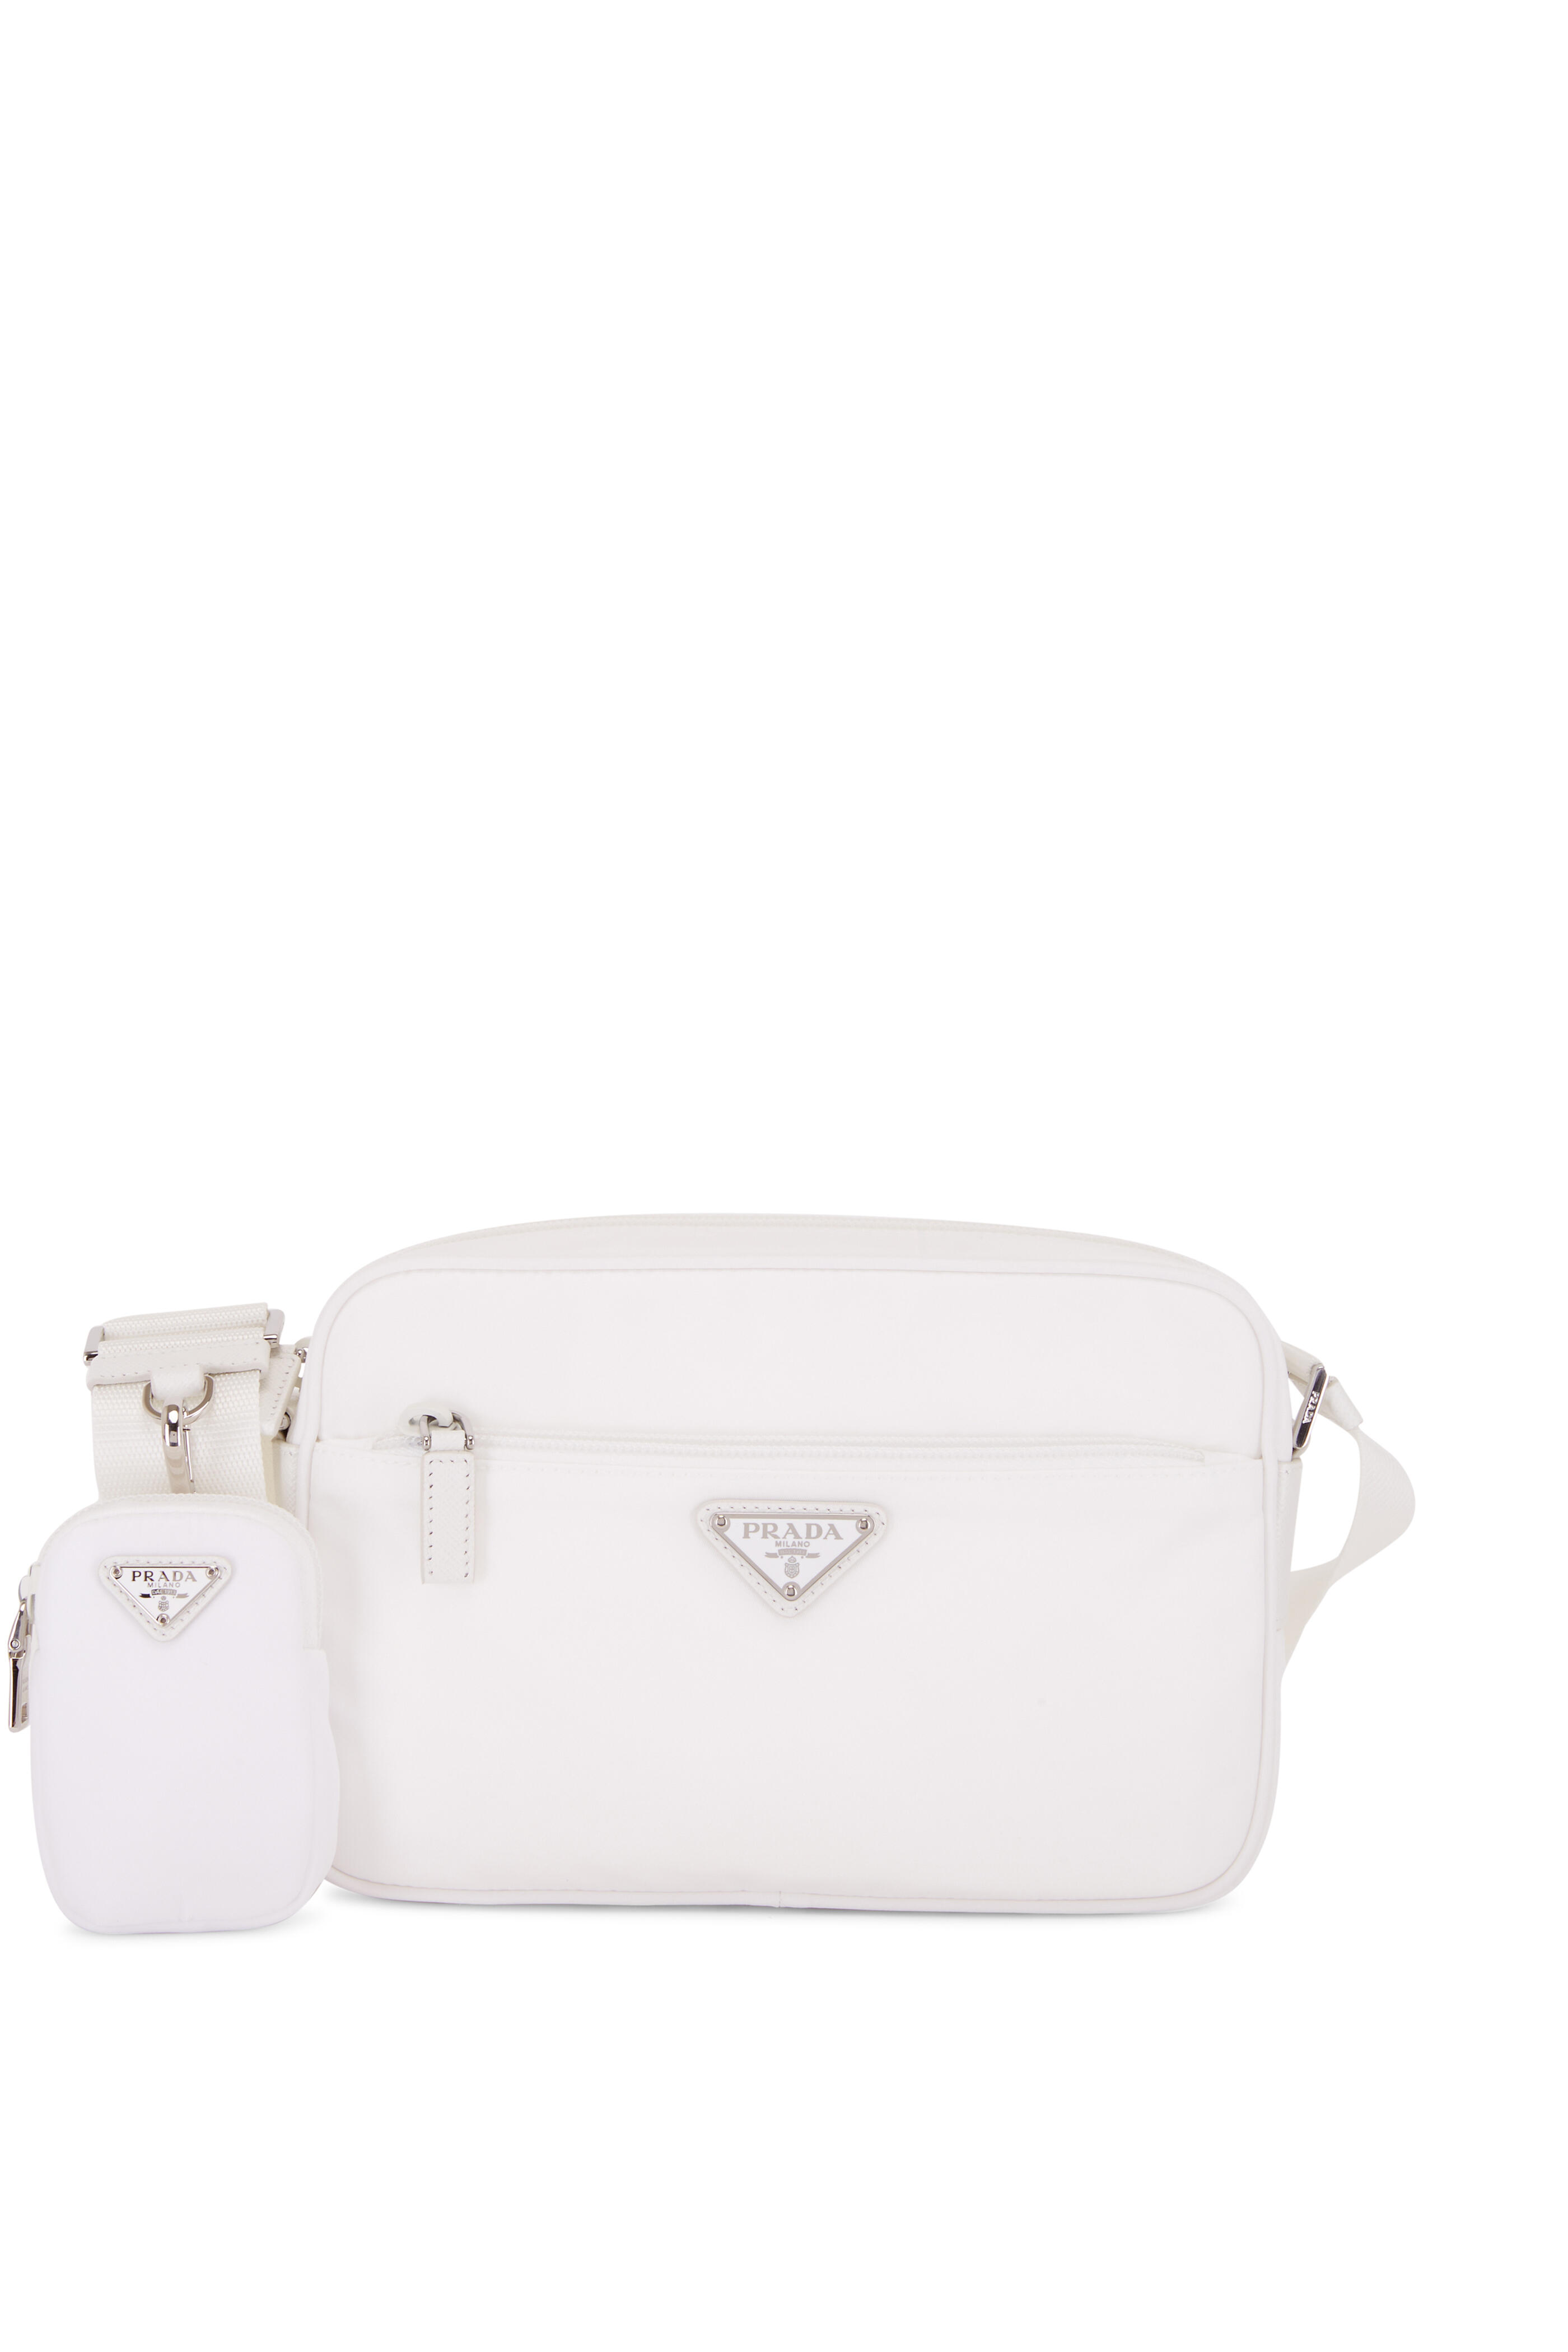 Prada - White Nylon Camera Bag | Mitchell Stores